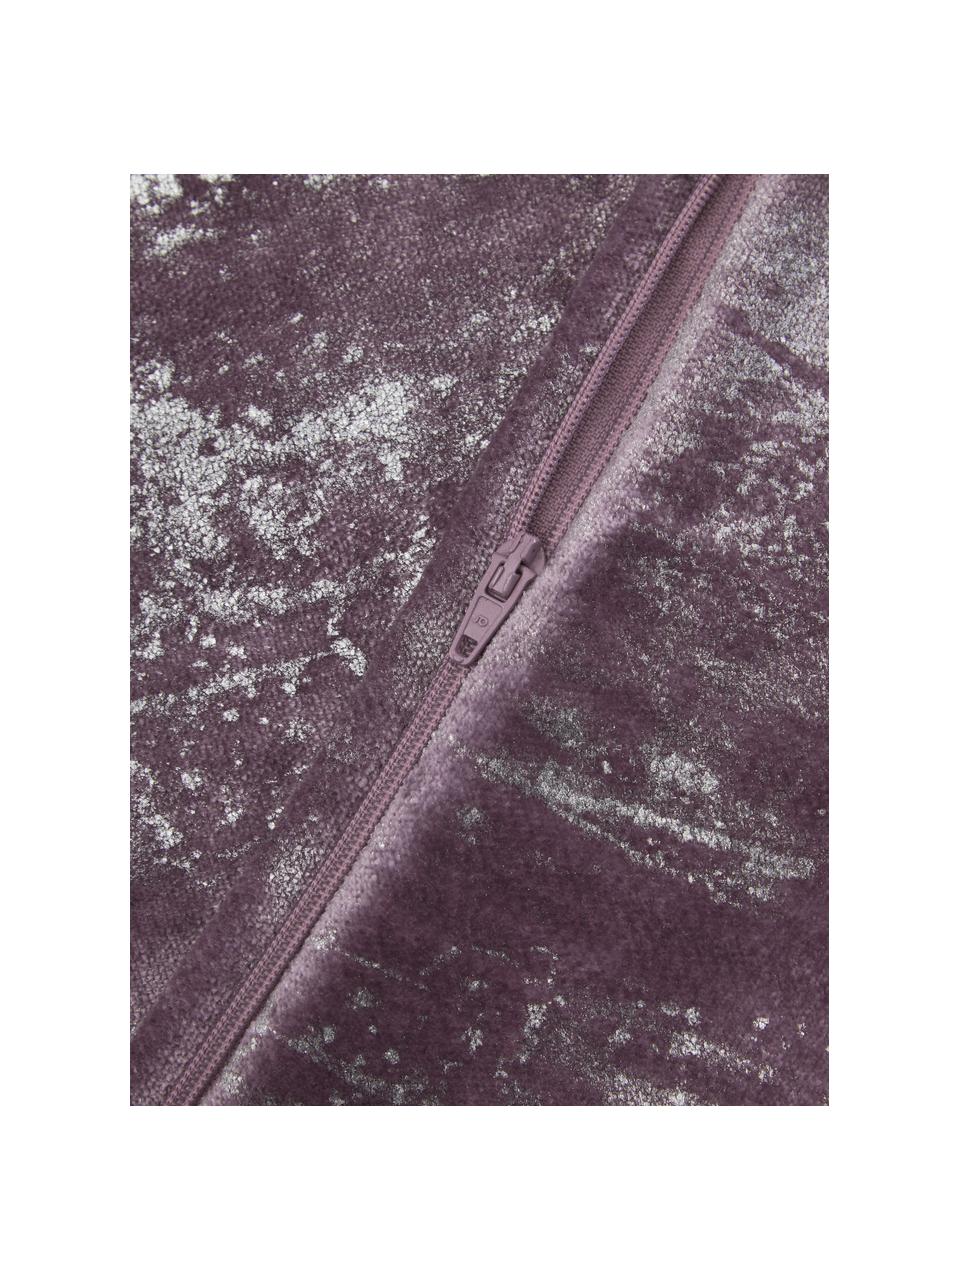 Samt-Kissenhülle Shiny mit schimmerndem Vintage Muster, 100 % Polyestersamt, Rosa, schimmernd, B 40 x L 40 cm